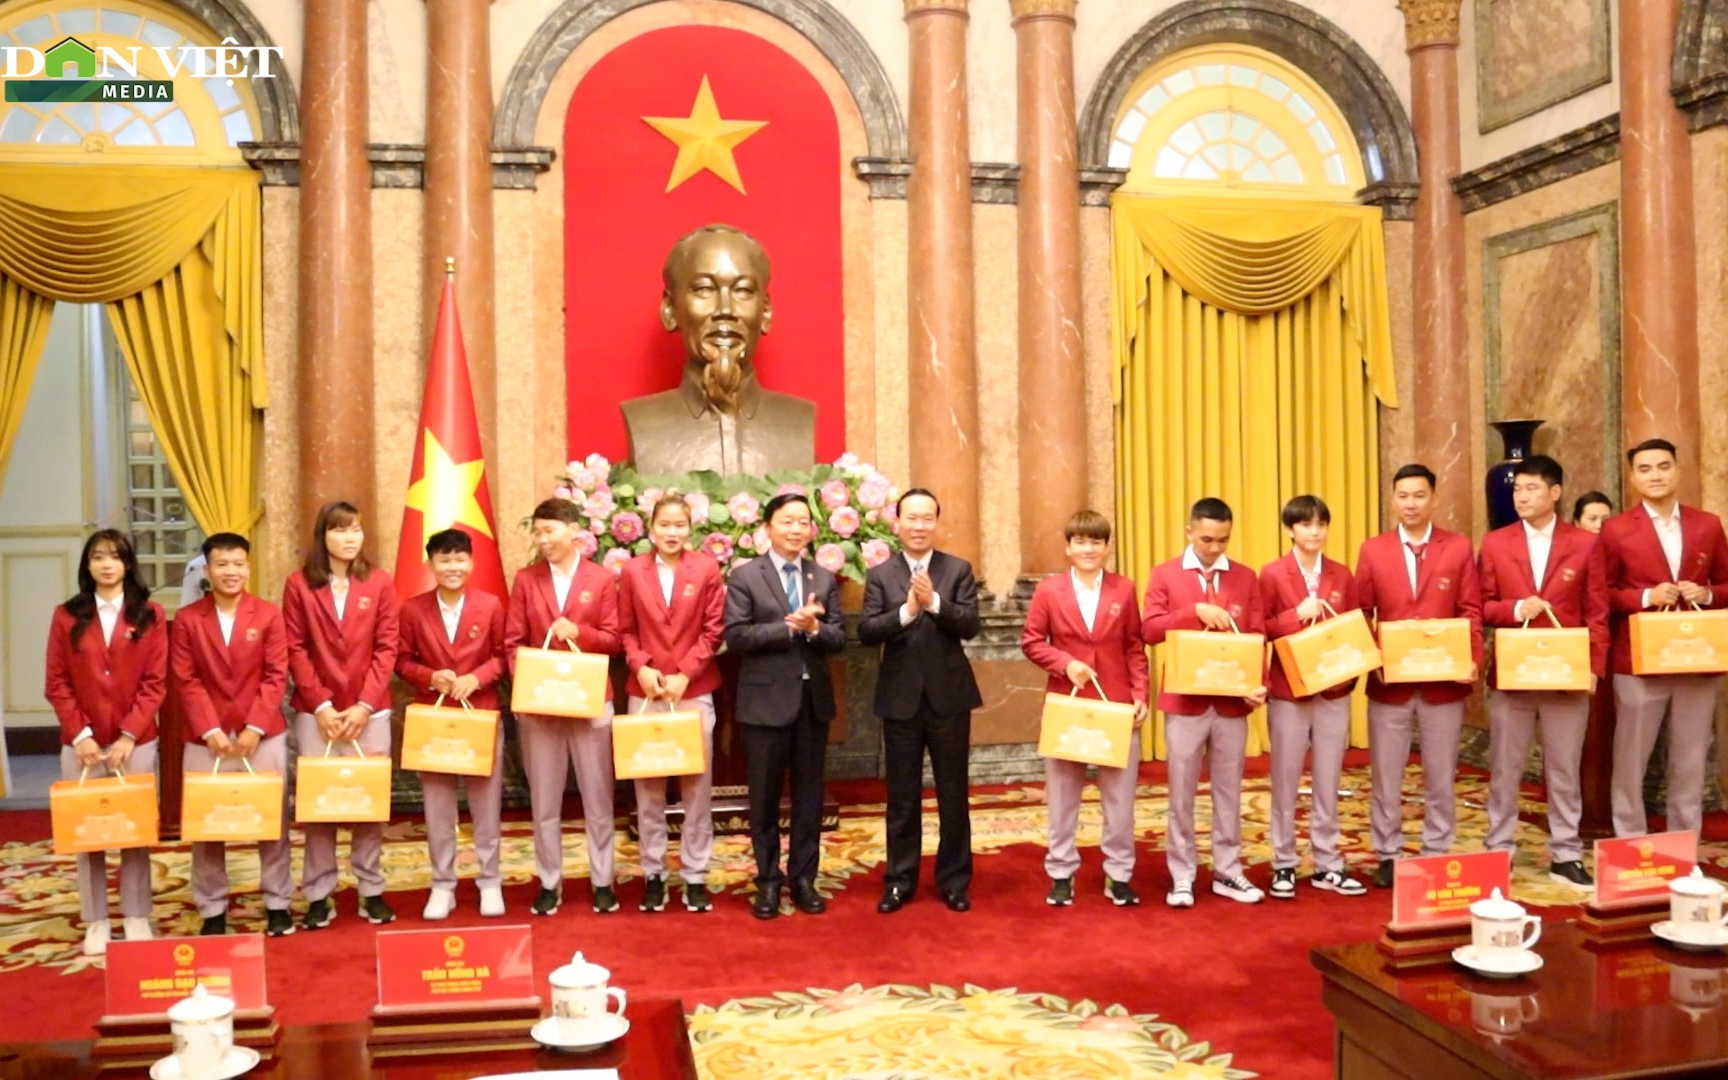 Video: "Cô gái vàng" Nguyễn Thị Oanh nhận Huân chương Lao động hạng Nhì và kỷ lục tiền thưởng